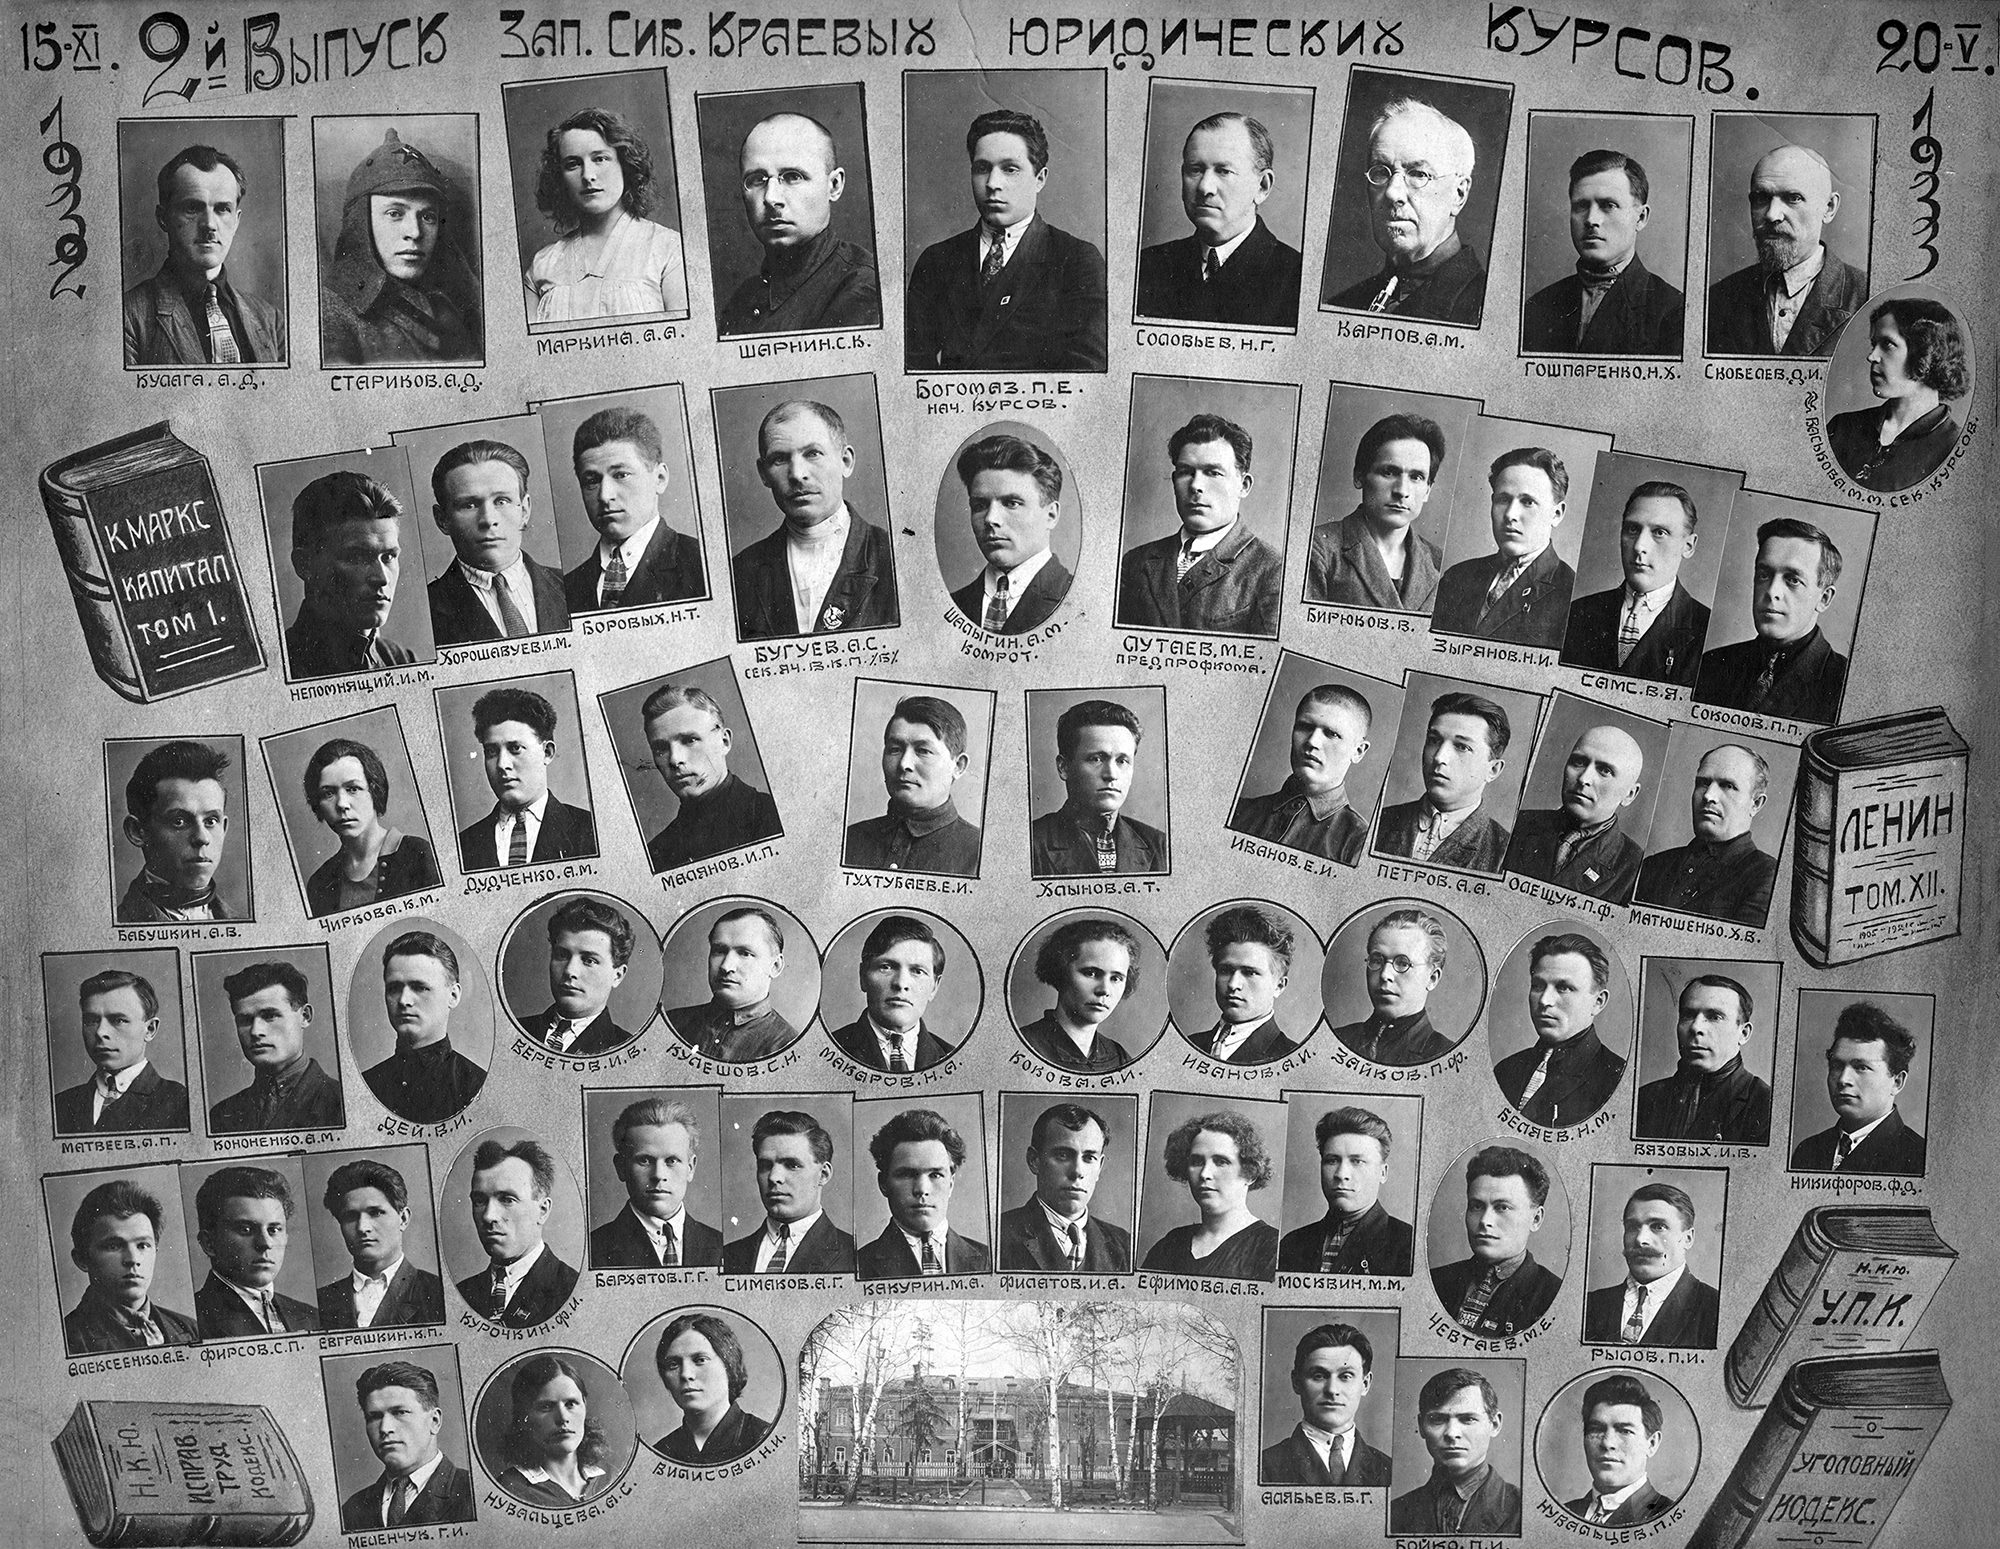 Второй выпуск Западно-Сибирских краевых юридических курсов. 15 ноября 1932 – 20 мая 1933 год.